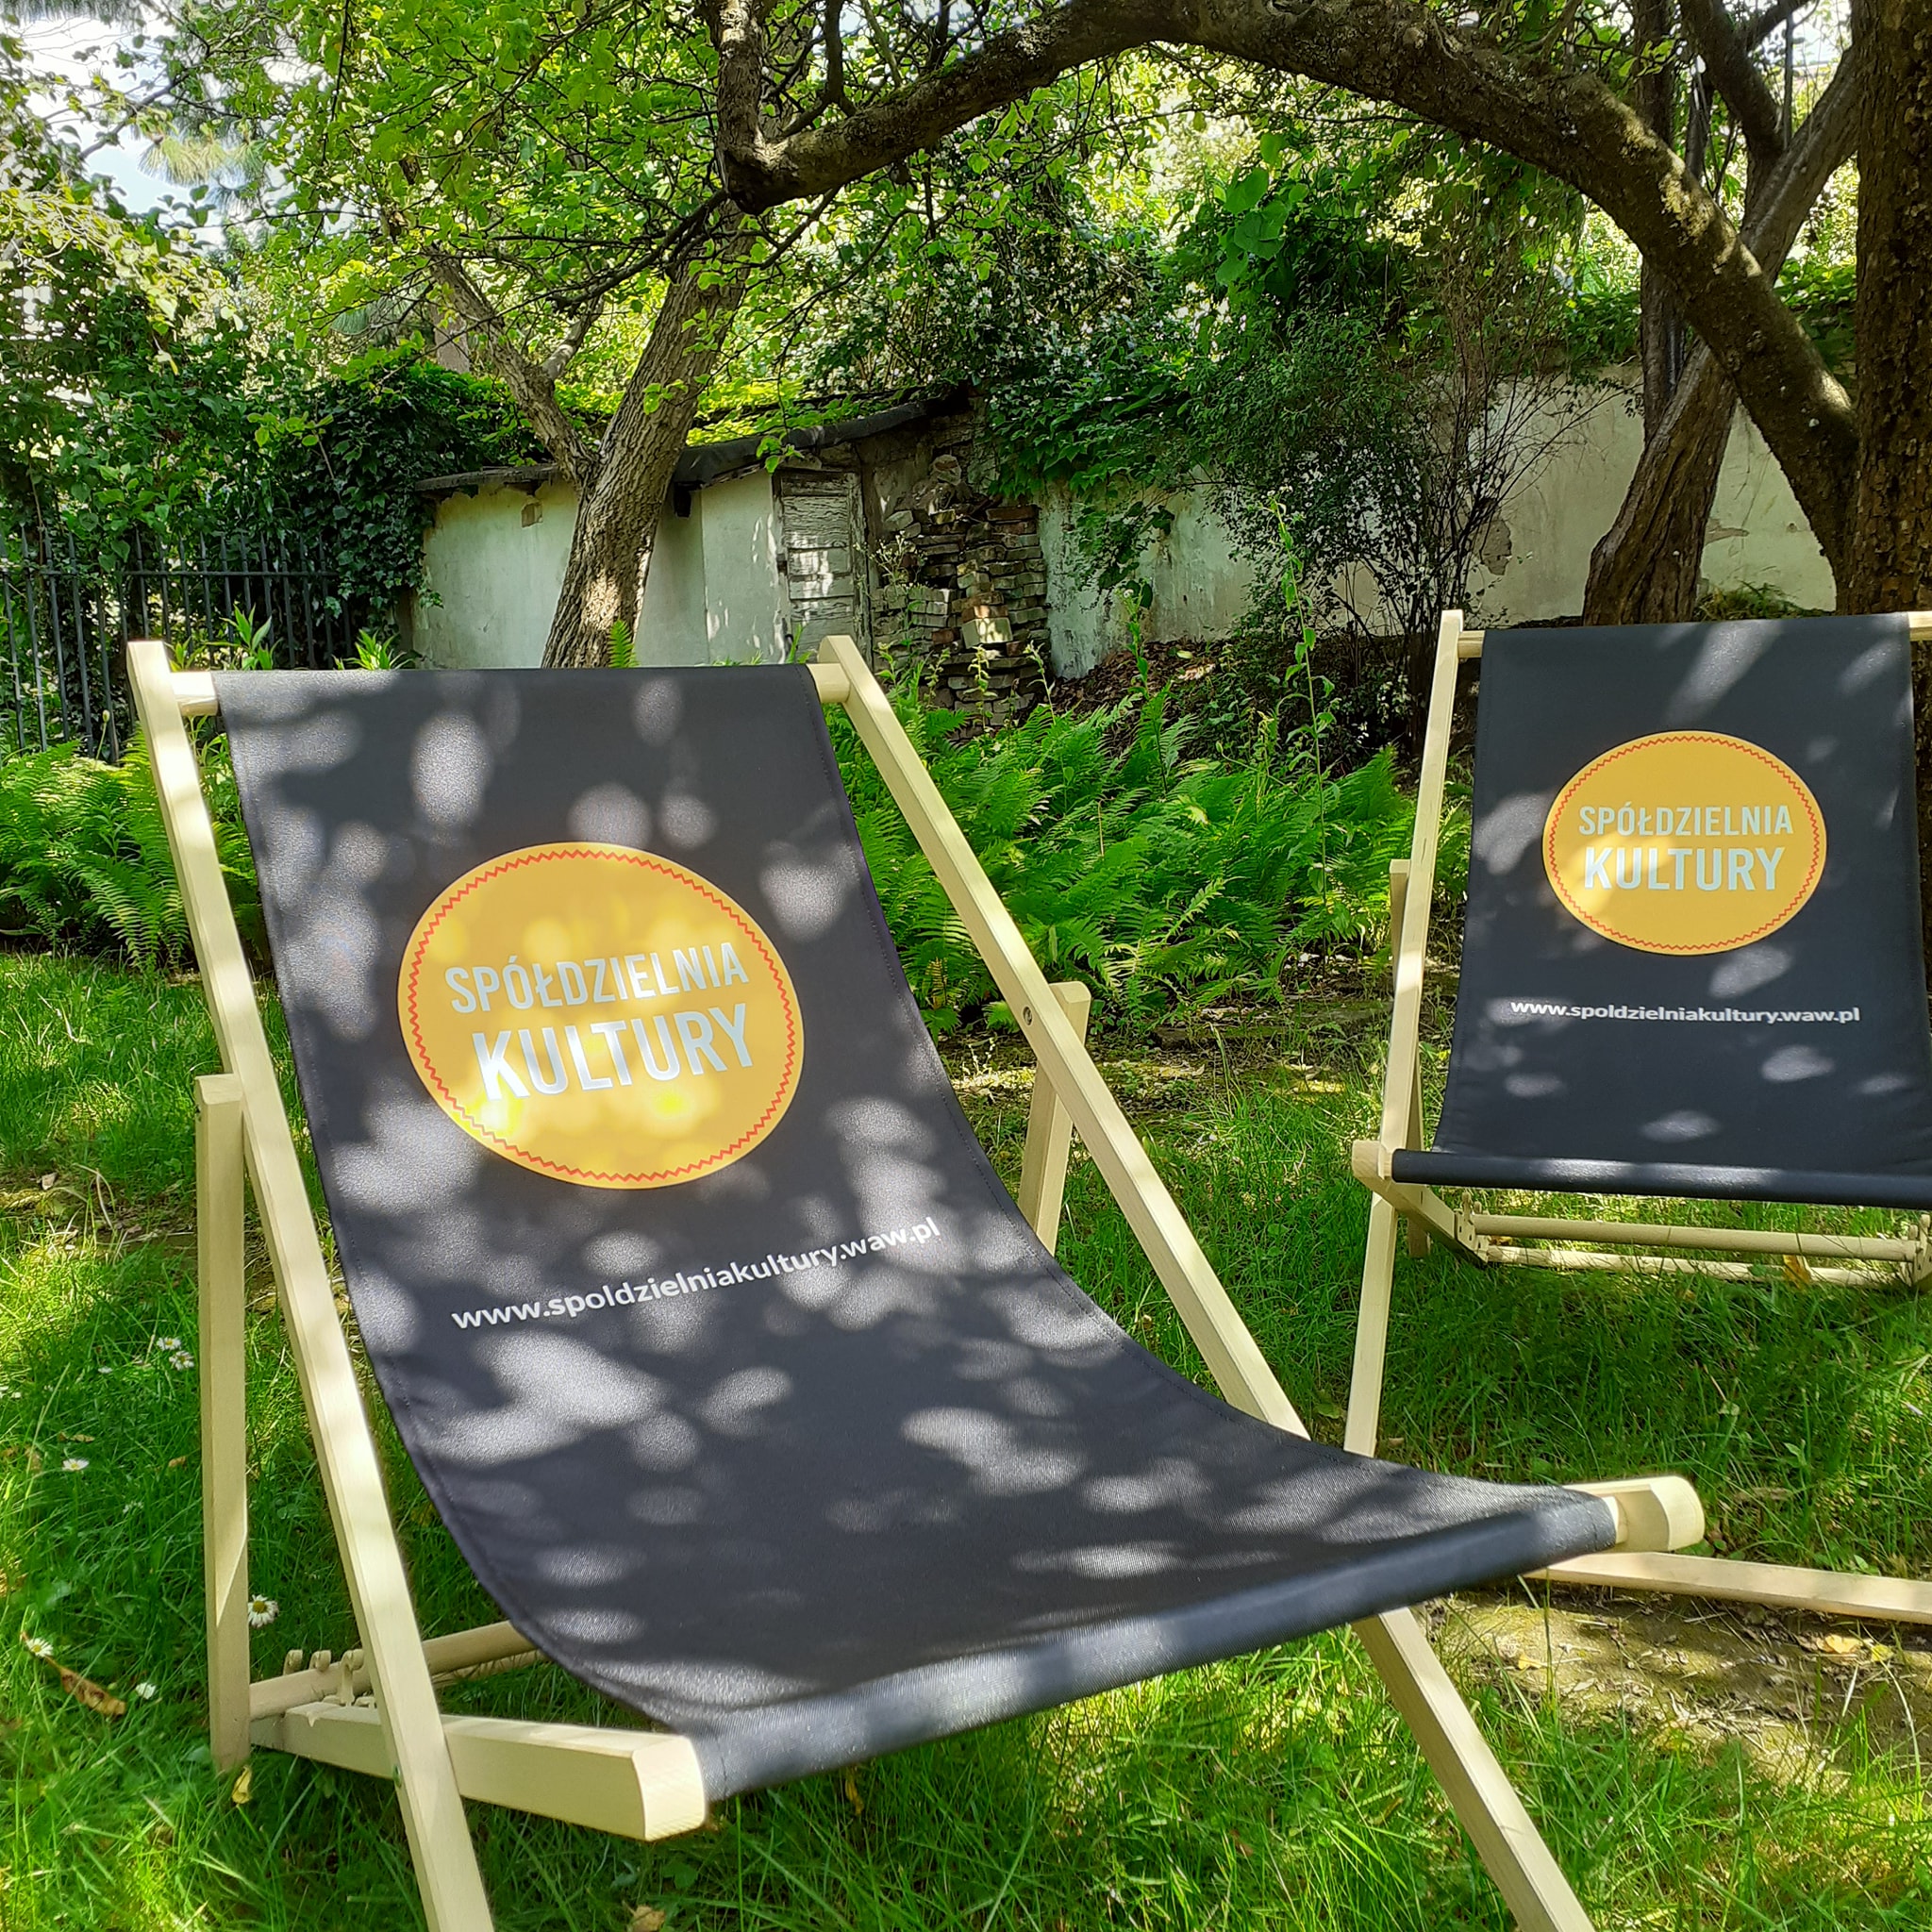 Dwa czarne leżaki z nadrukowanym pomarańczowym kołem i napisem Spółdzielnia kultury w miejscu, w którym można się oprzeć plecami. Leżaki ustawione są na trawie, w słońcu, w pobliżu drzew. 